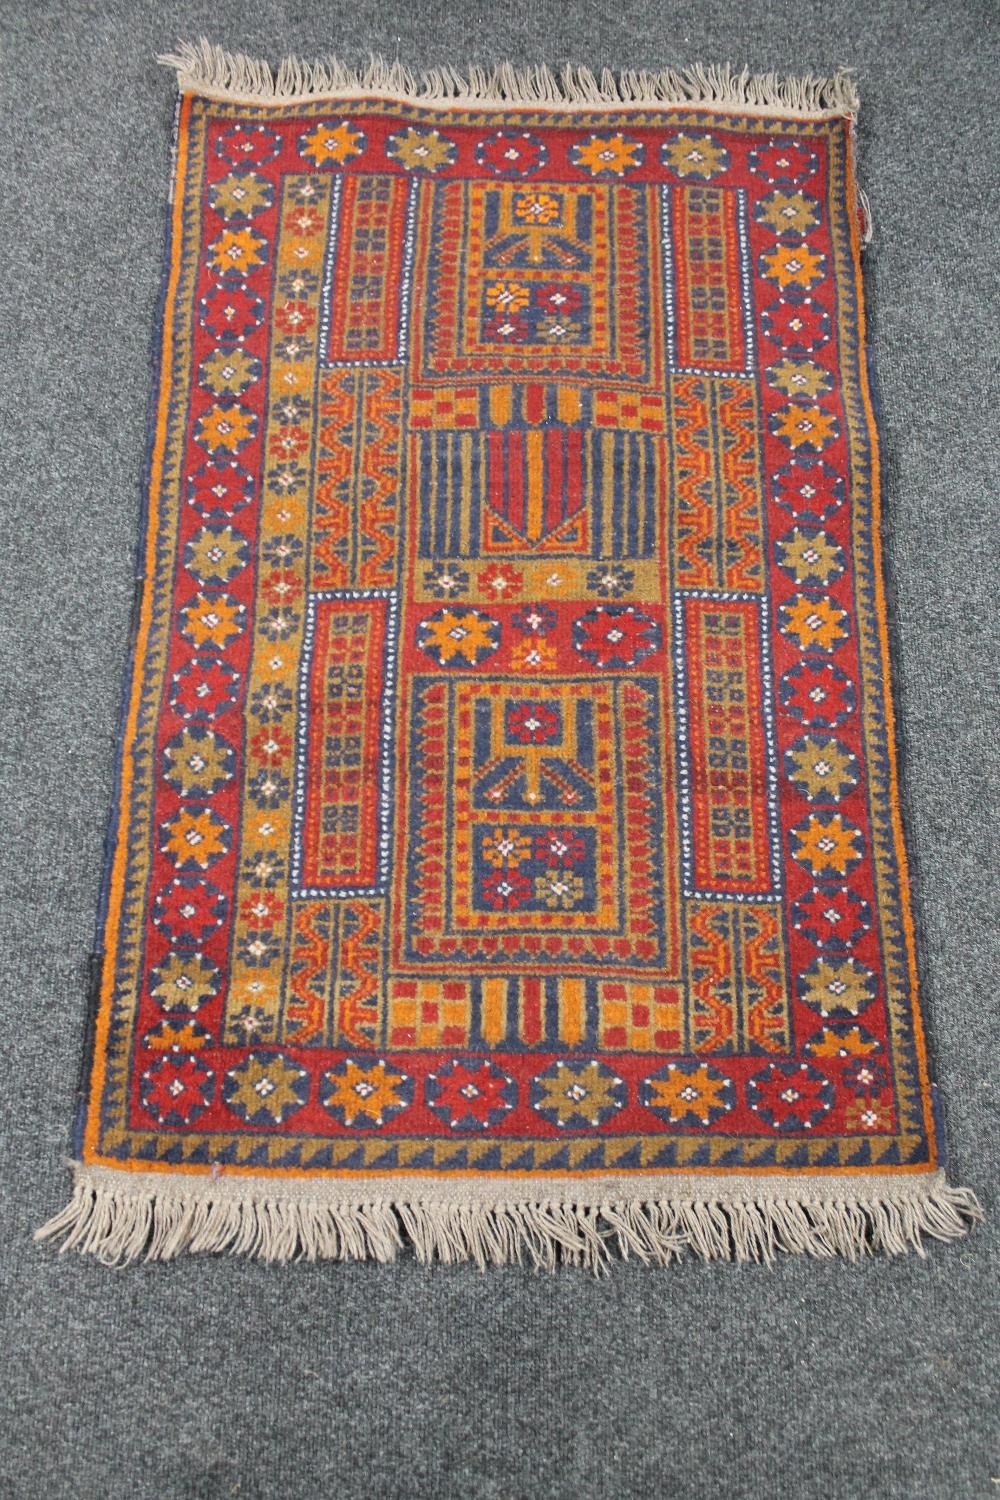 An Afghan rug 137 cm x 78 cm